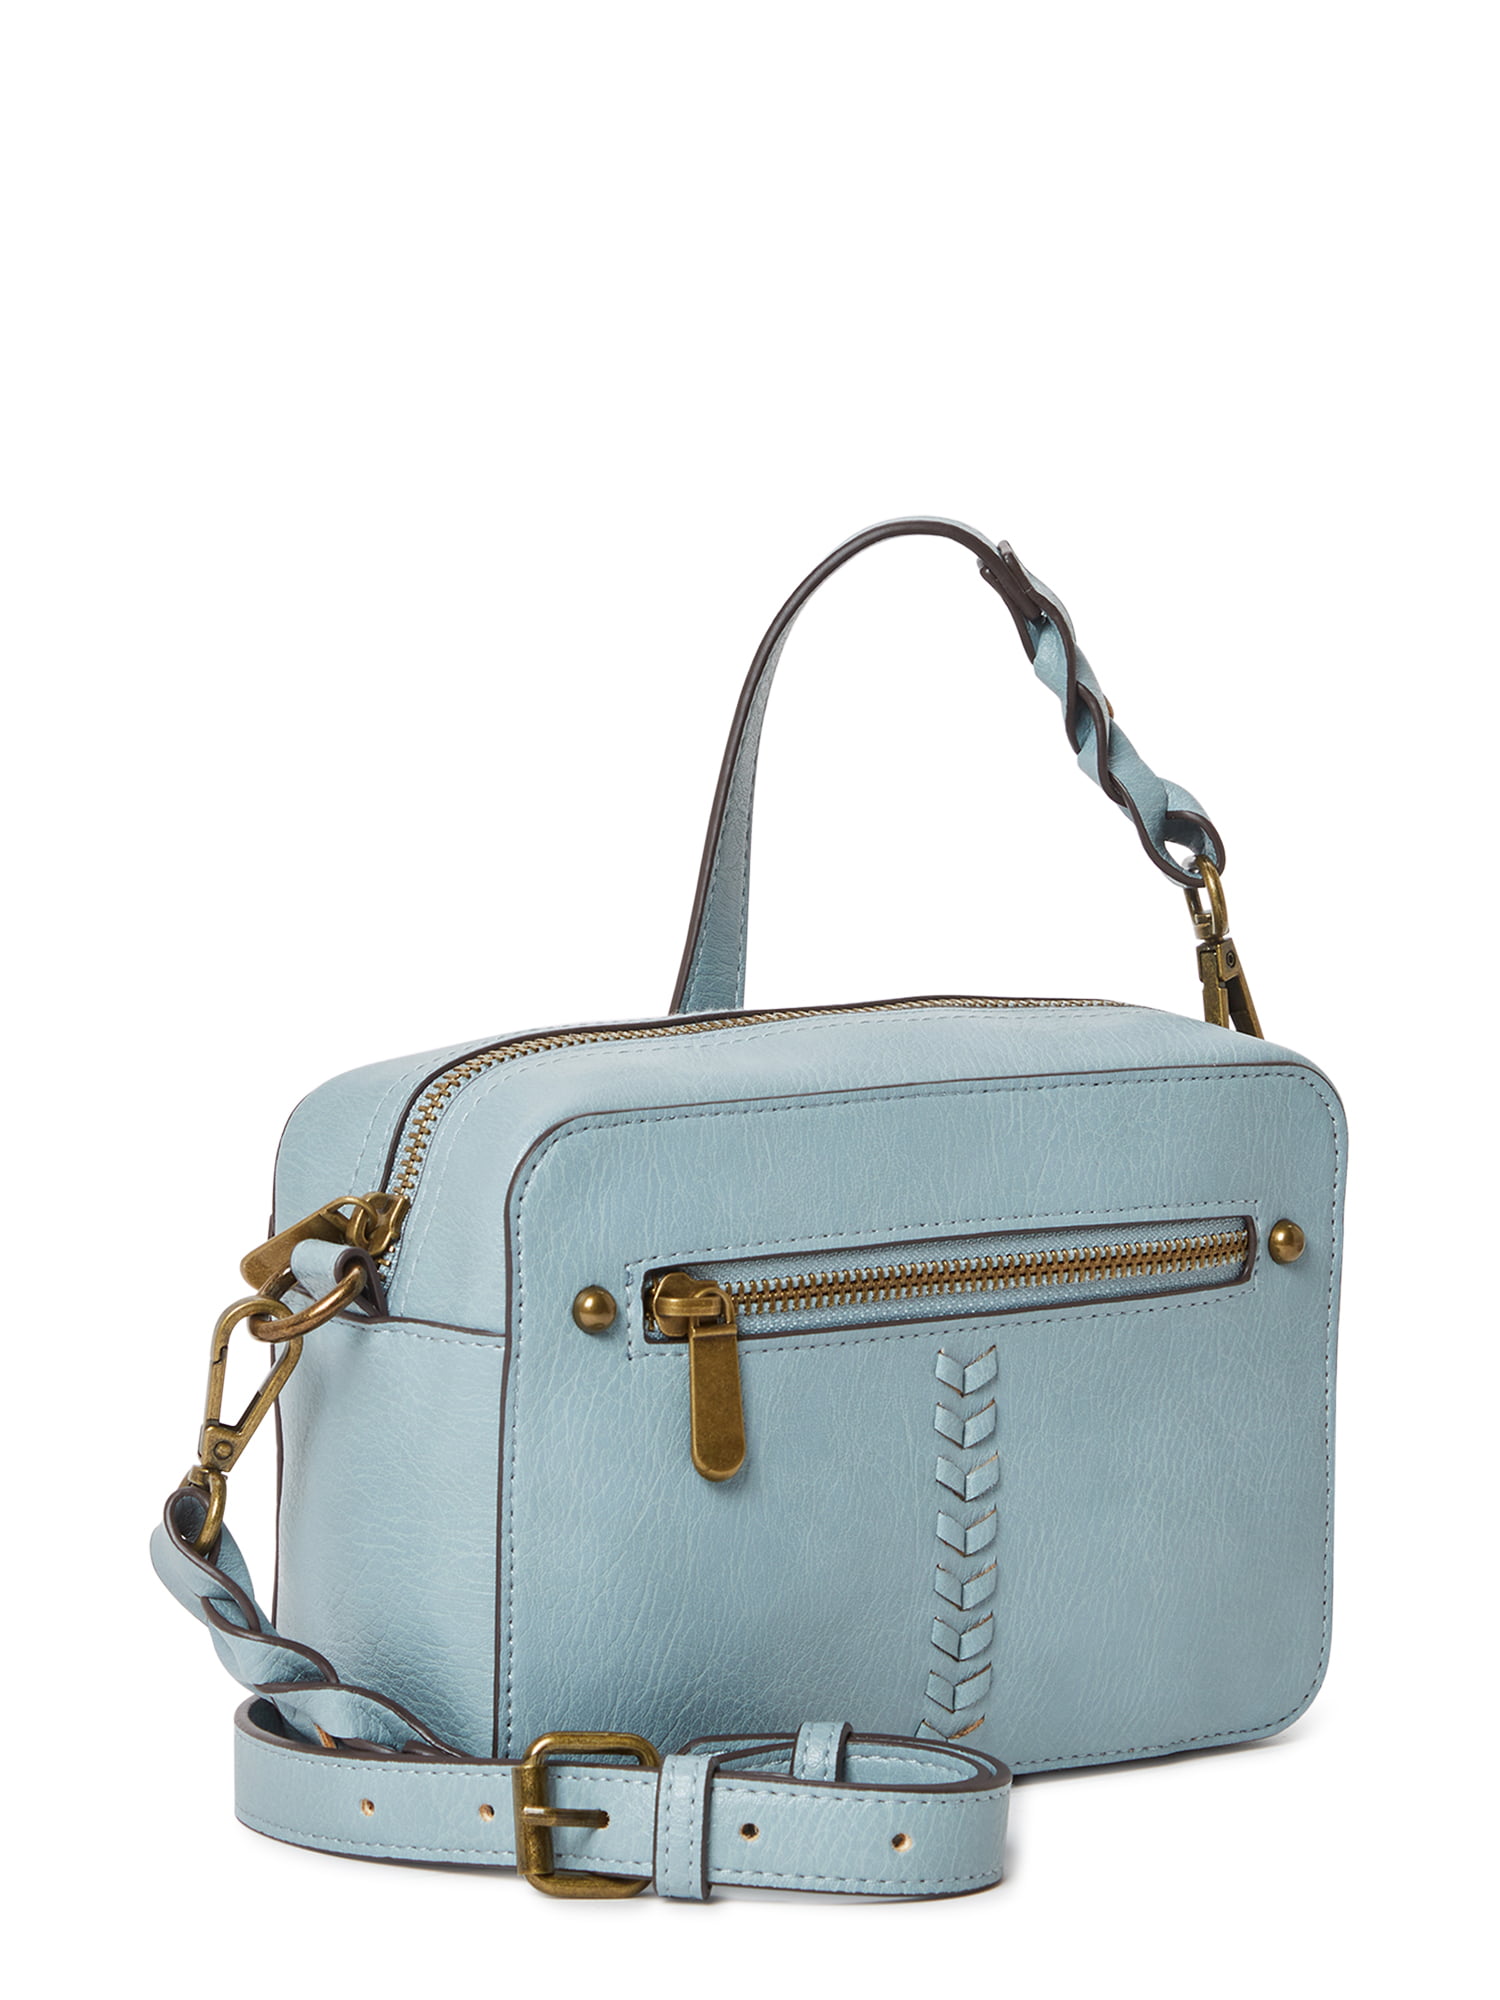 Olivia Miller Handbags